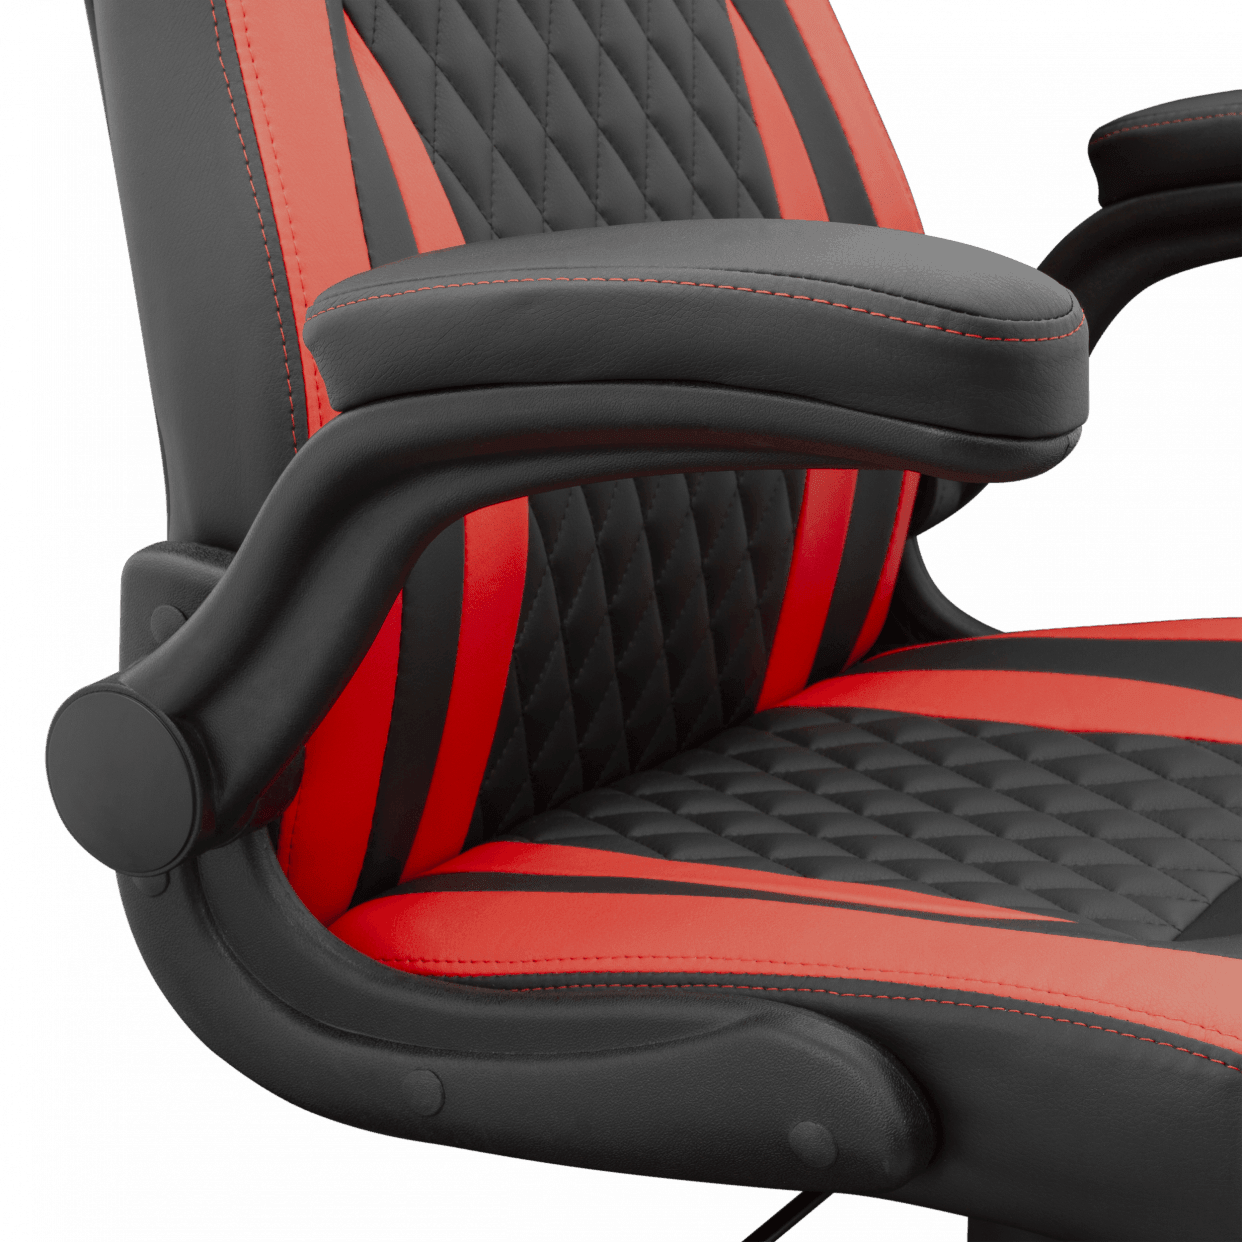 White Shark Dervish Gaming Chair - GameStore.mt | Powered by Flutisat